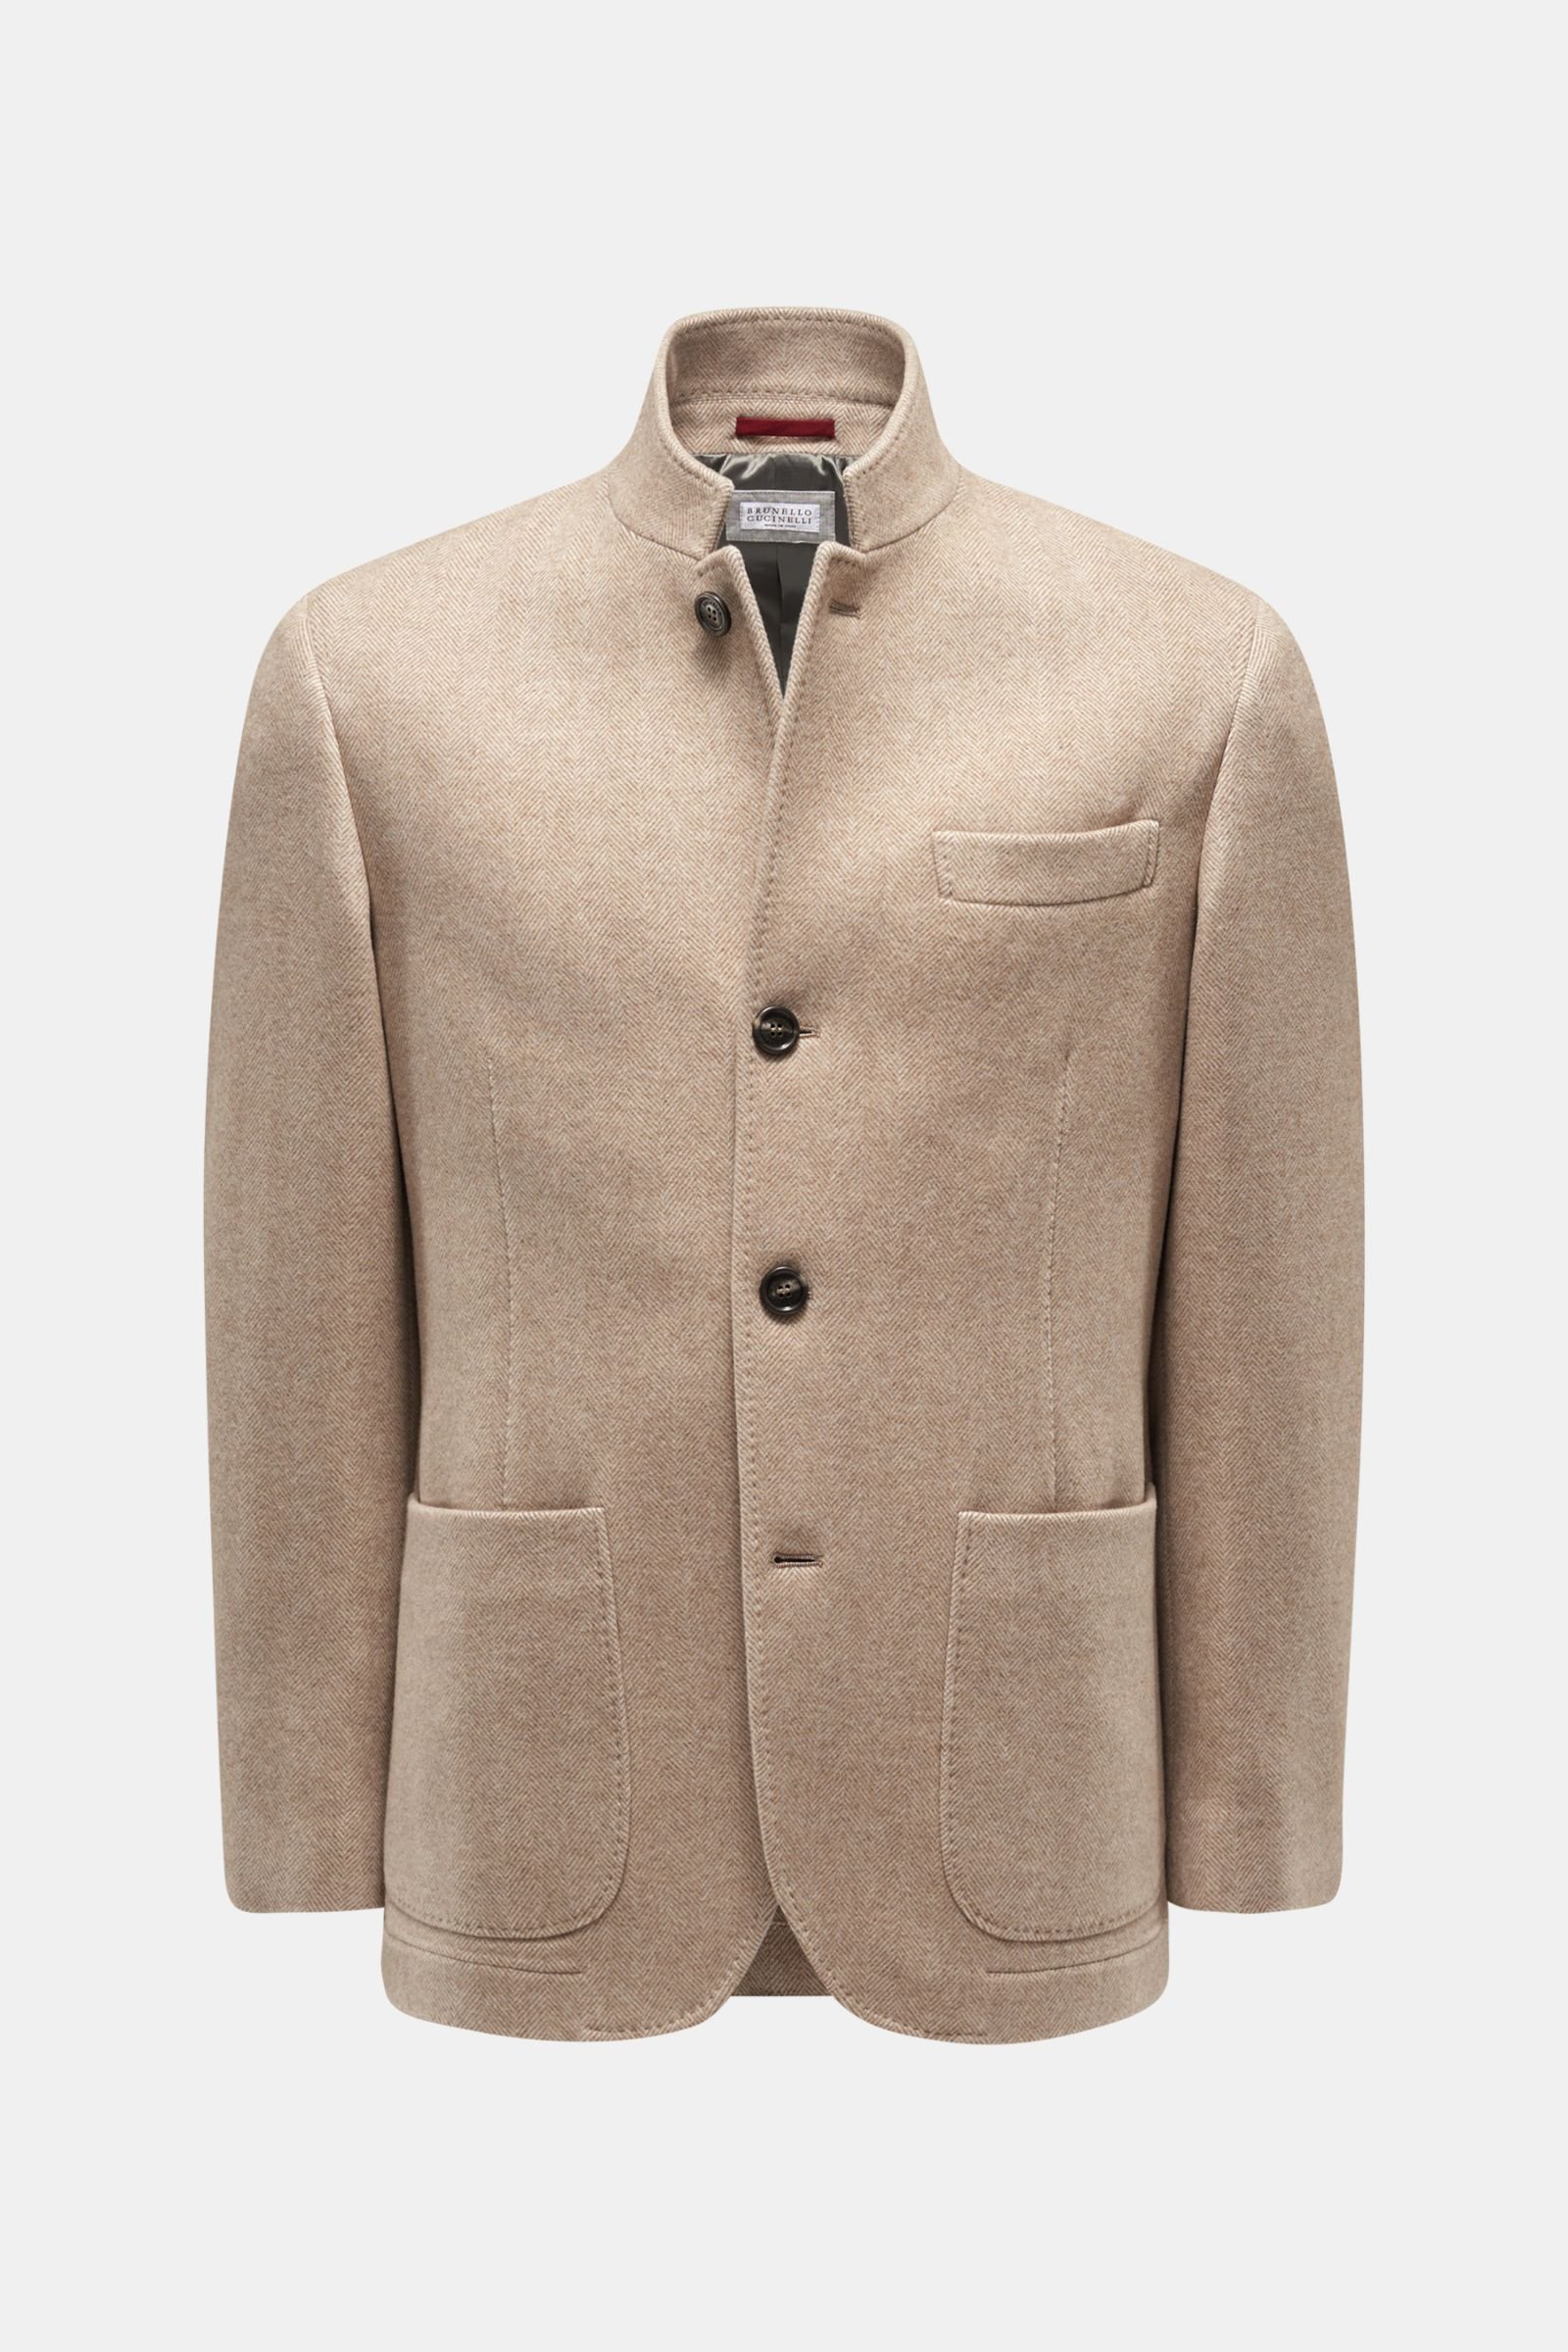 BRUNELLO CUCINELLI jacket light brown/beige patterned | BRAUN Hamburg